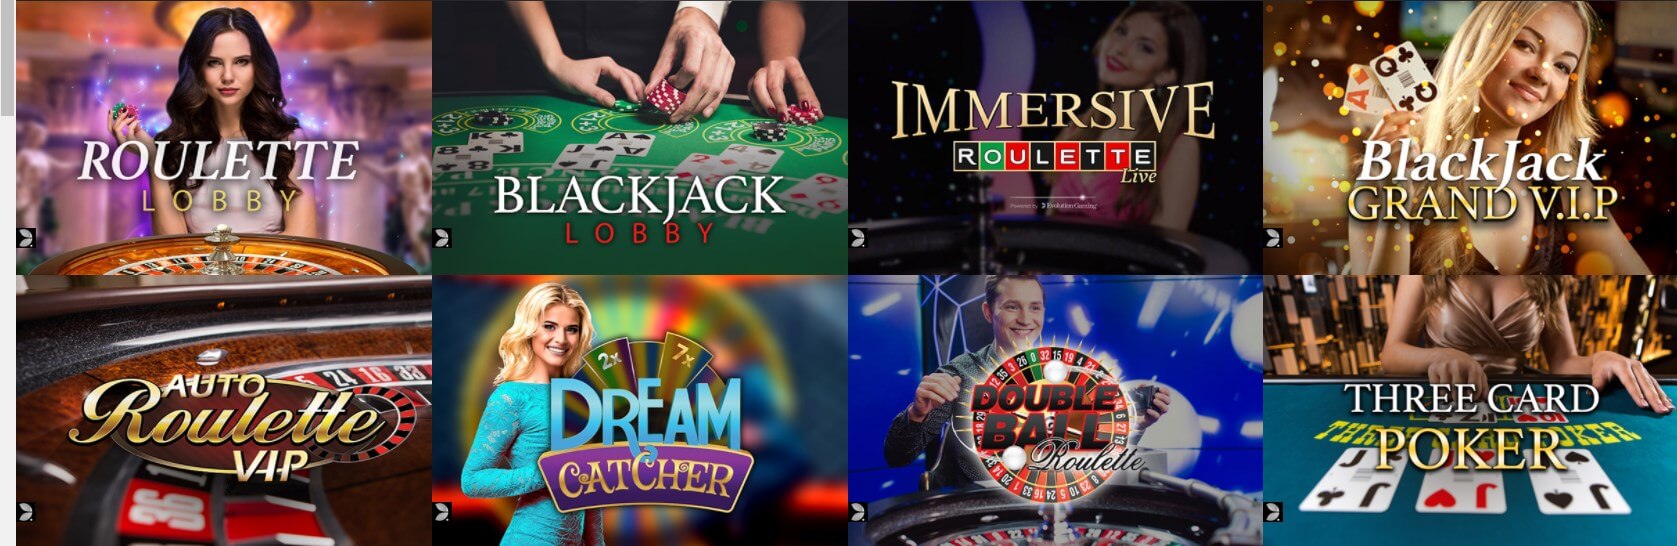 LIve casino